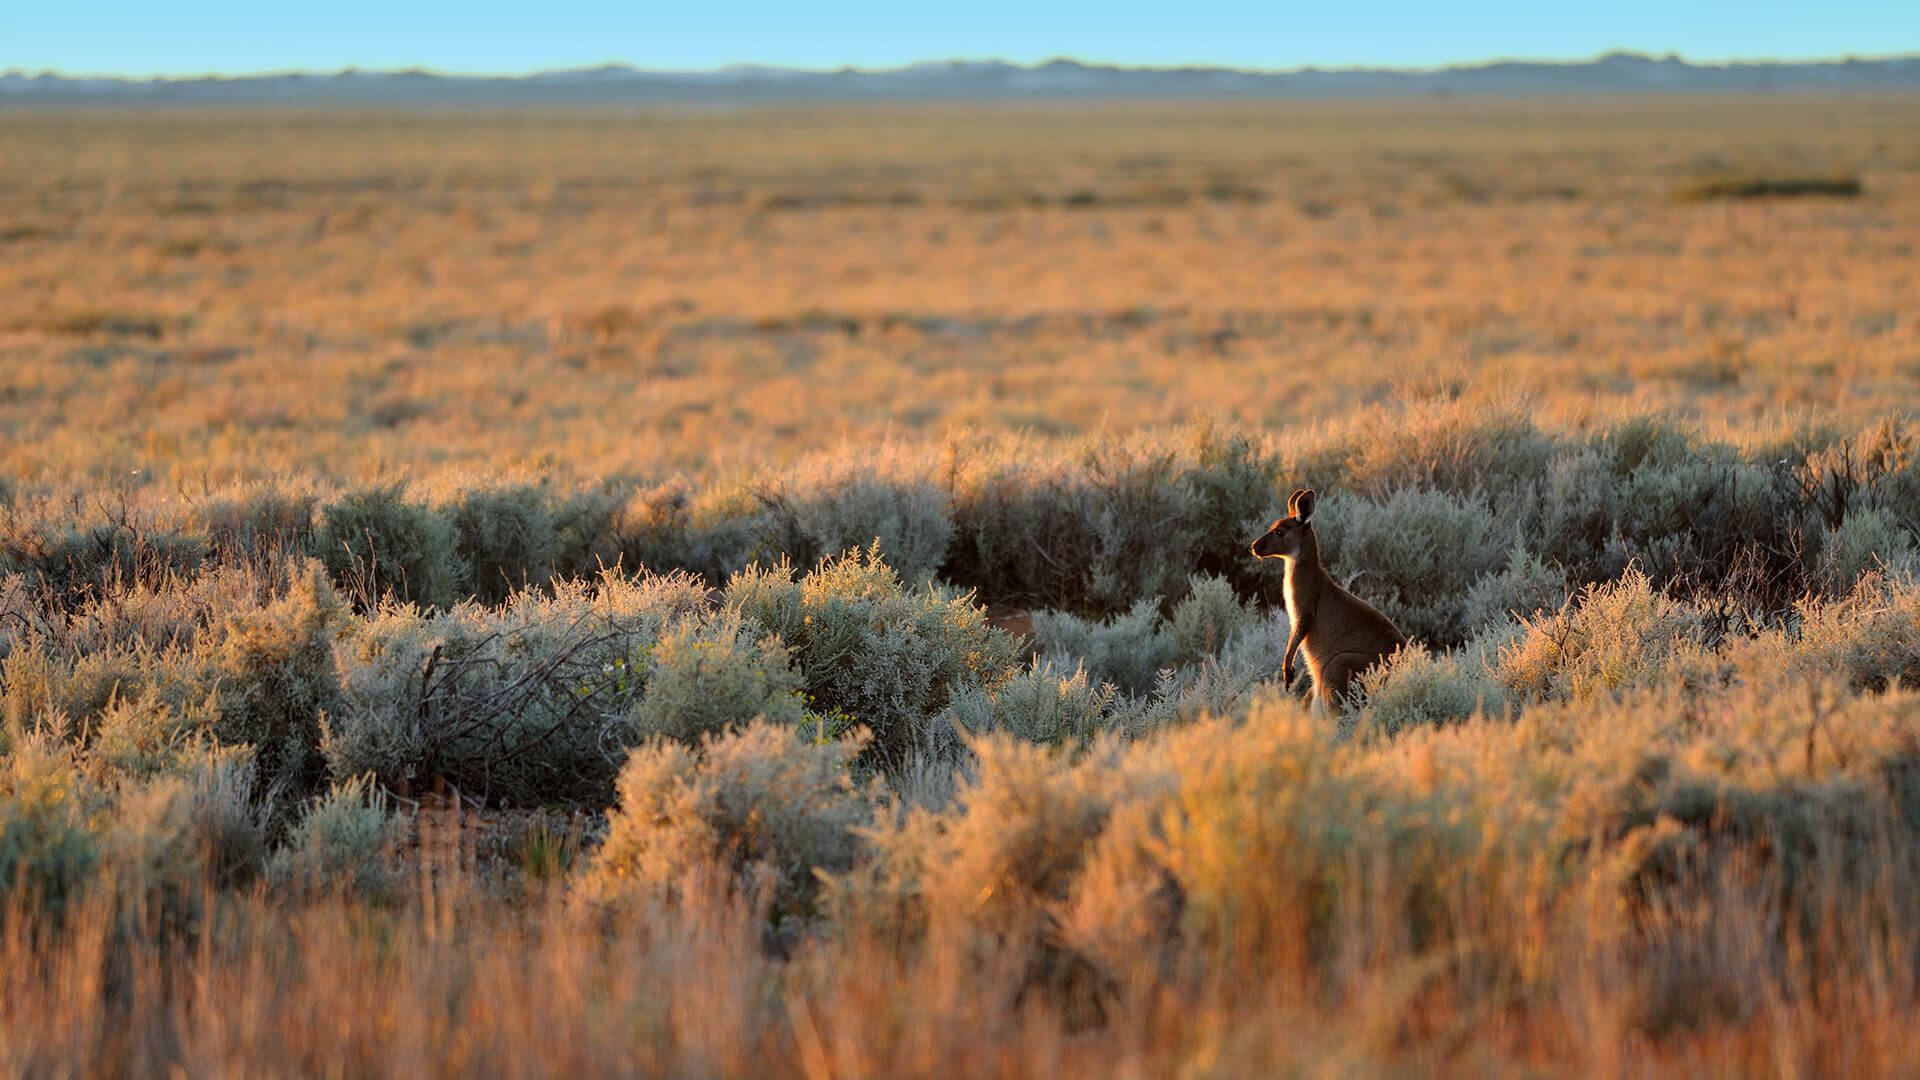 Aesthetic Australian Outback Baby Kangaroo Background